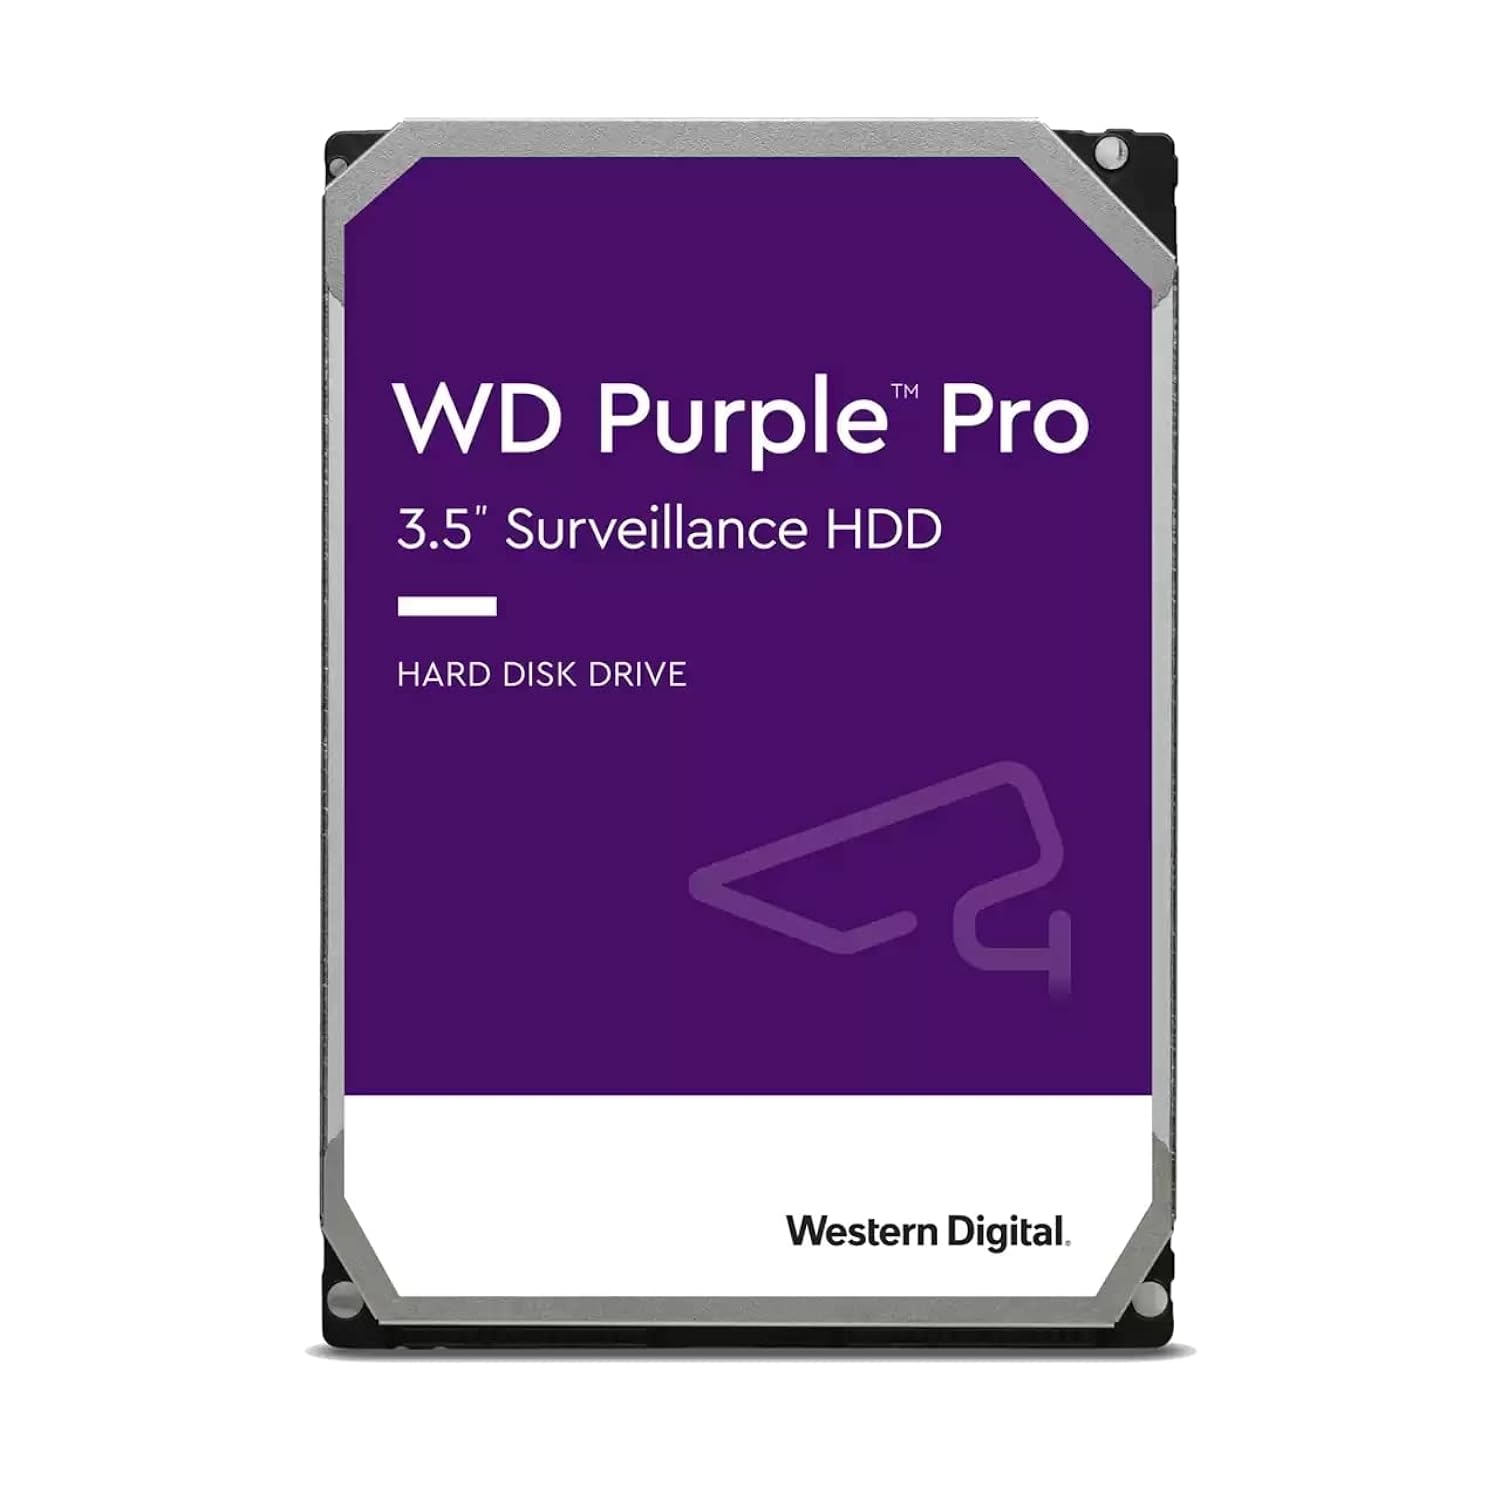 Western Digital 8TB WD Purple Pro Surveillance Internal Hard Drive HDD - SATA 6 Gb/s, 256 MB Cache, 3.5" - WD8001PURP